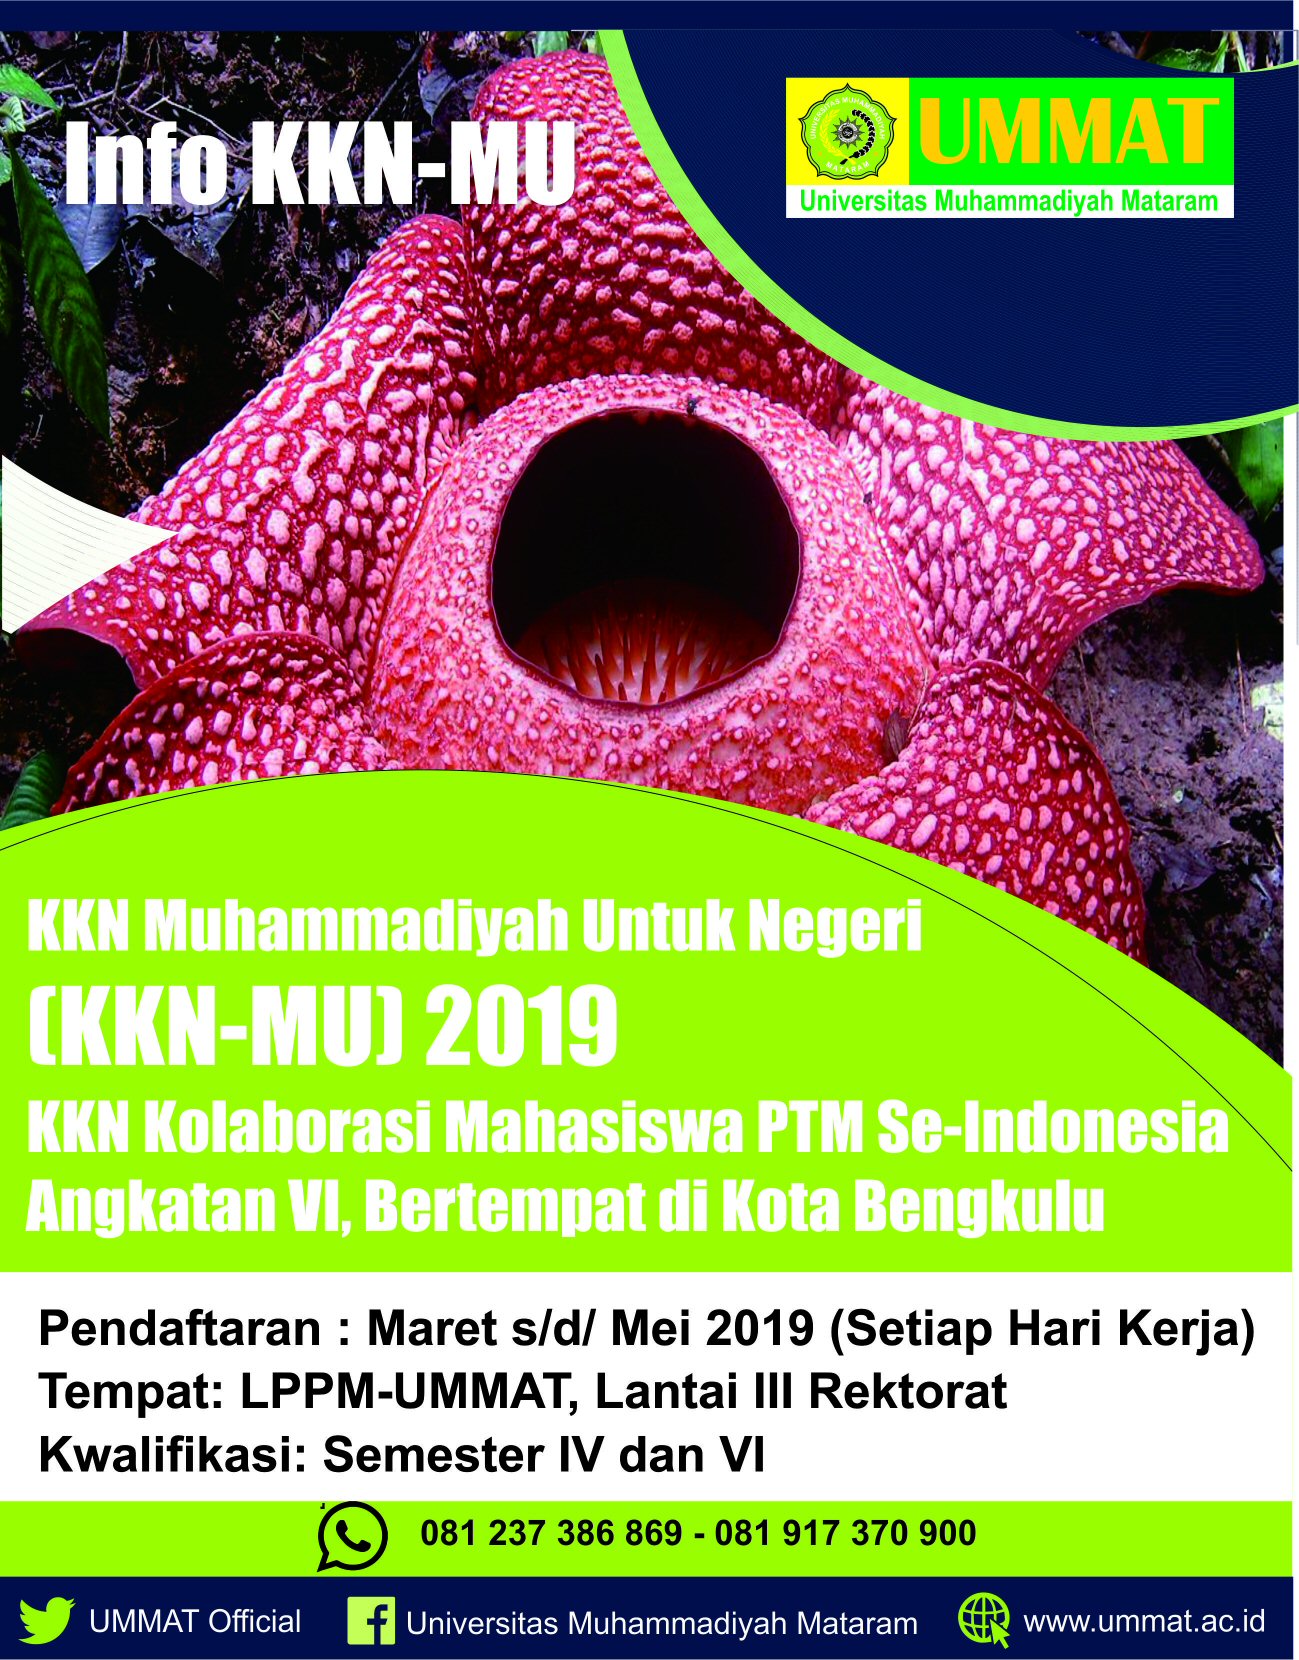 KKN Muhammadiyah Untuk Negeri (KKN-MU) 2019